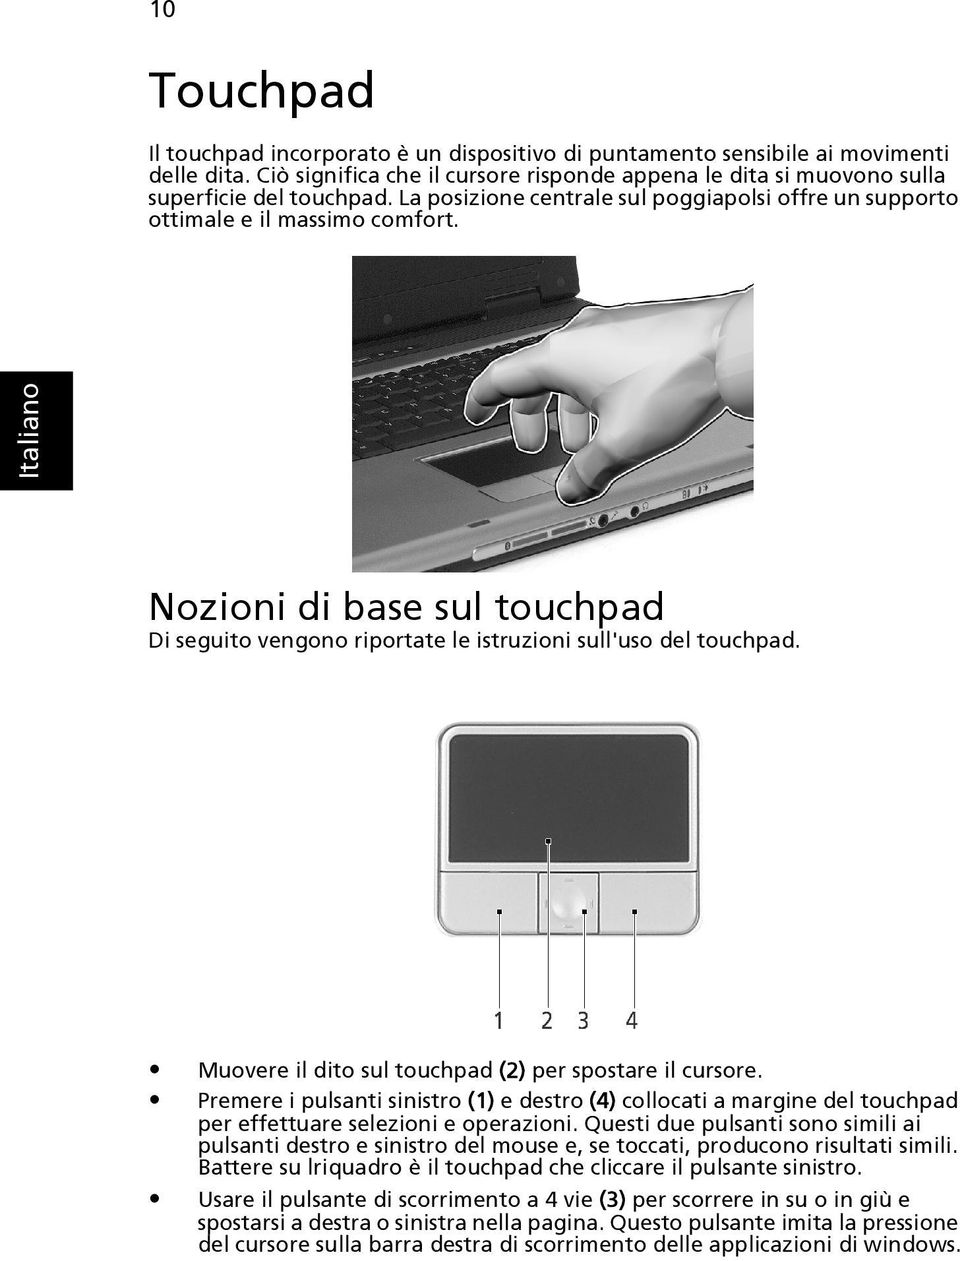 Muovere il dito sul touchpad (2) per spostare il cursore. Premere i pulsanti sinistro (1) e destro (4) collocati a margine del touchpad per effettuare selezioni e operazioni.